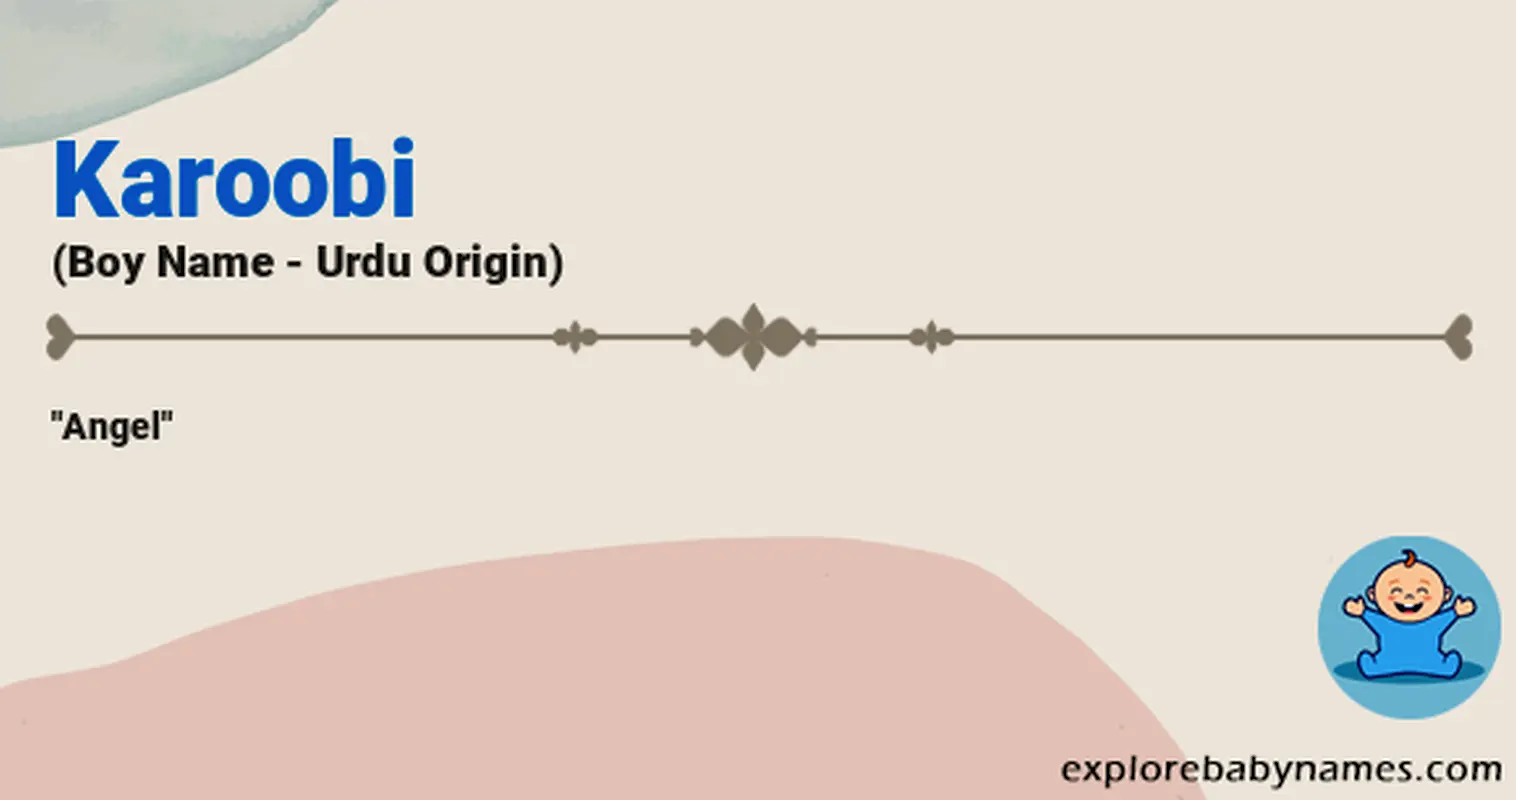 Meaning of Karoobi